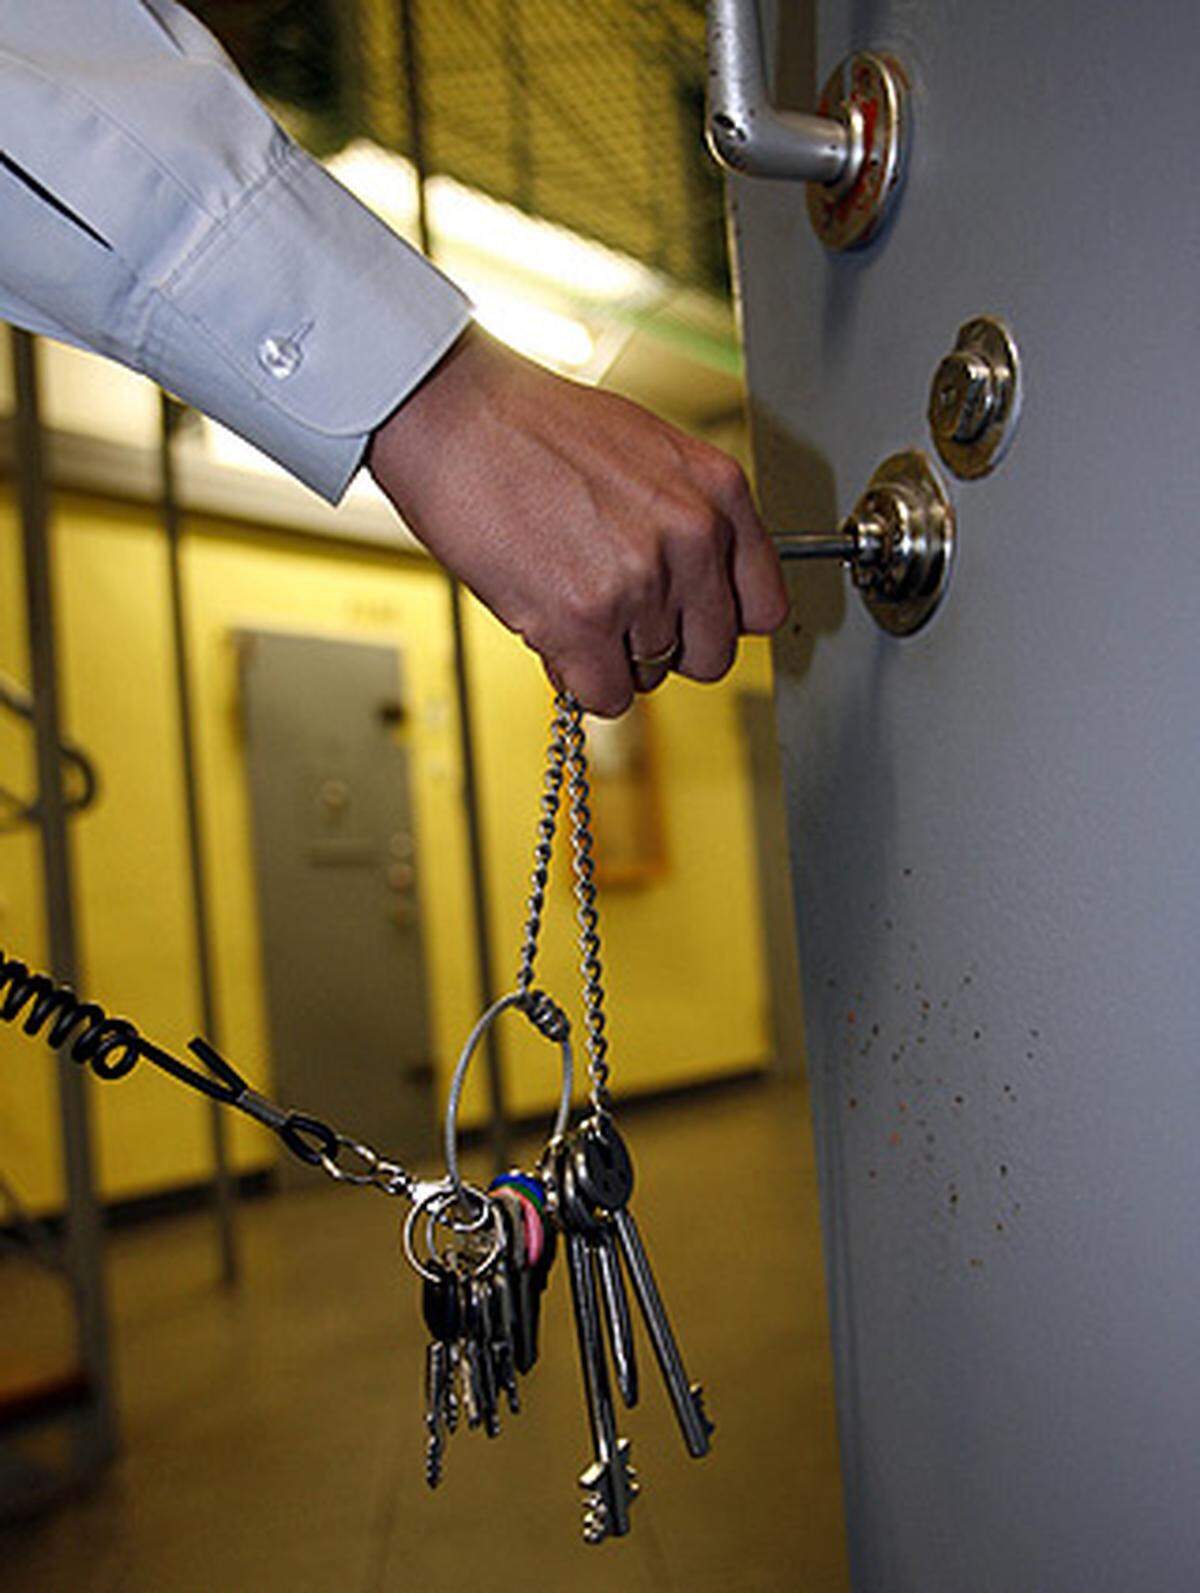 In Dänemark ist es nicht illegal, aus dem Gefängnis auszubrechen. Wenn man erwischt wird, muss man lediglich die Haftstrafe nachsitzen.